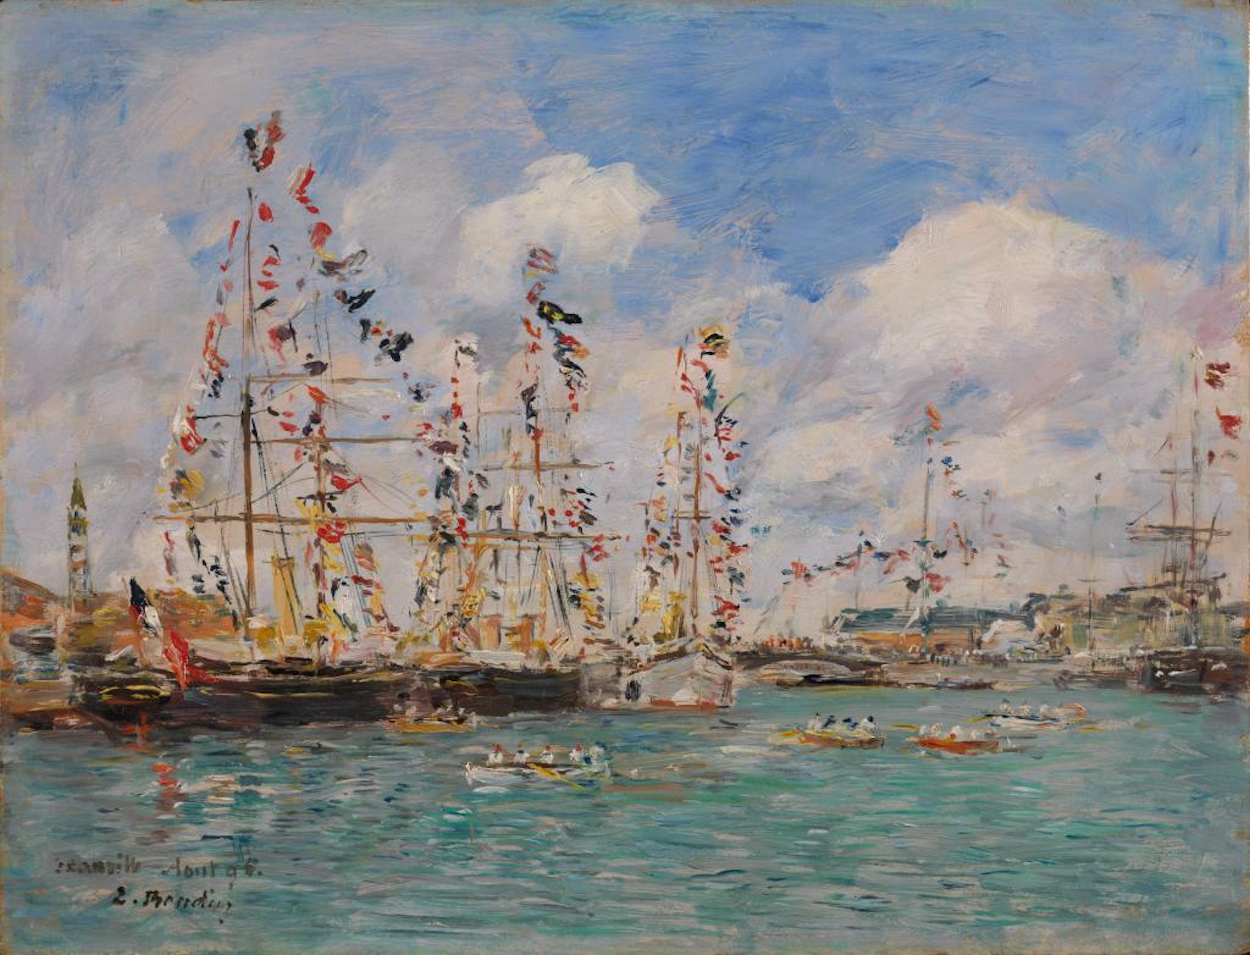 ドーヴィルの港の旗で飾られた船 by Eugène Boudin - 1895年 - 26.67 x 34.93 cm 